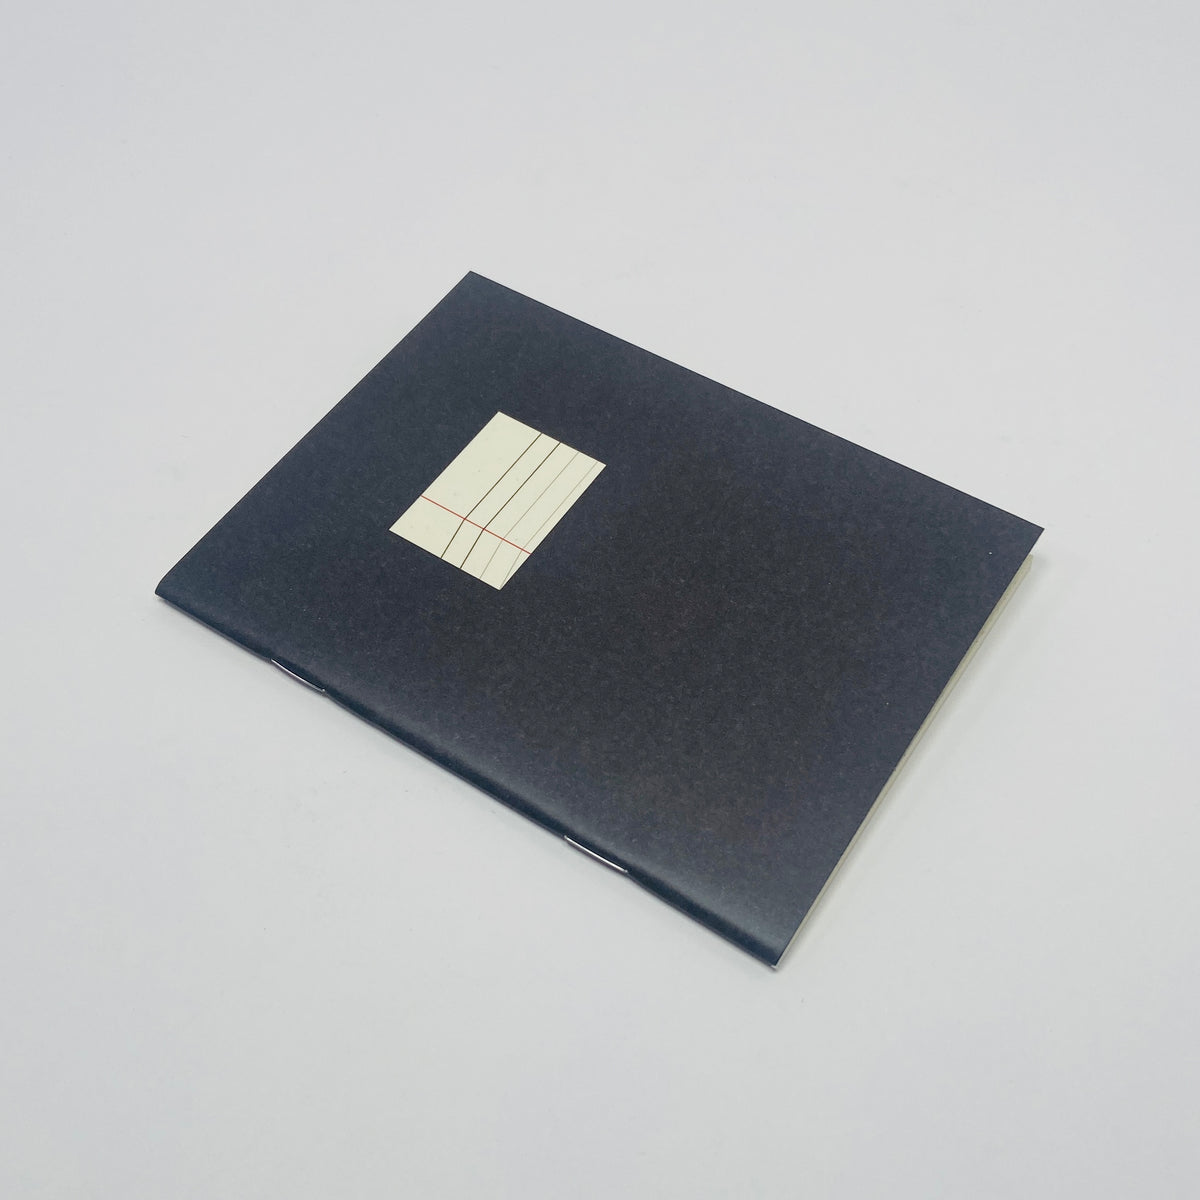 Paperways Mini Notebook - Black